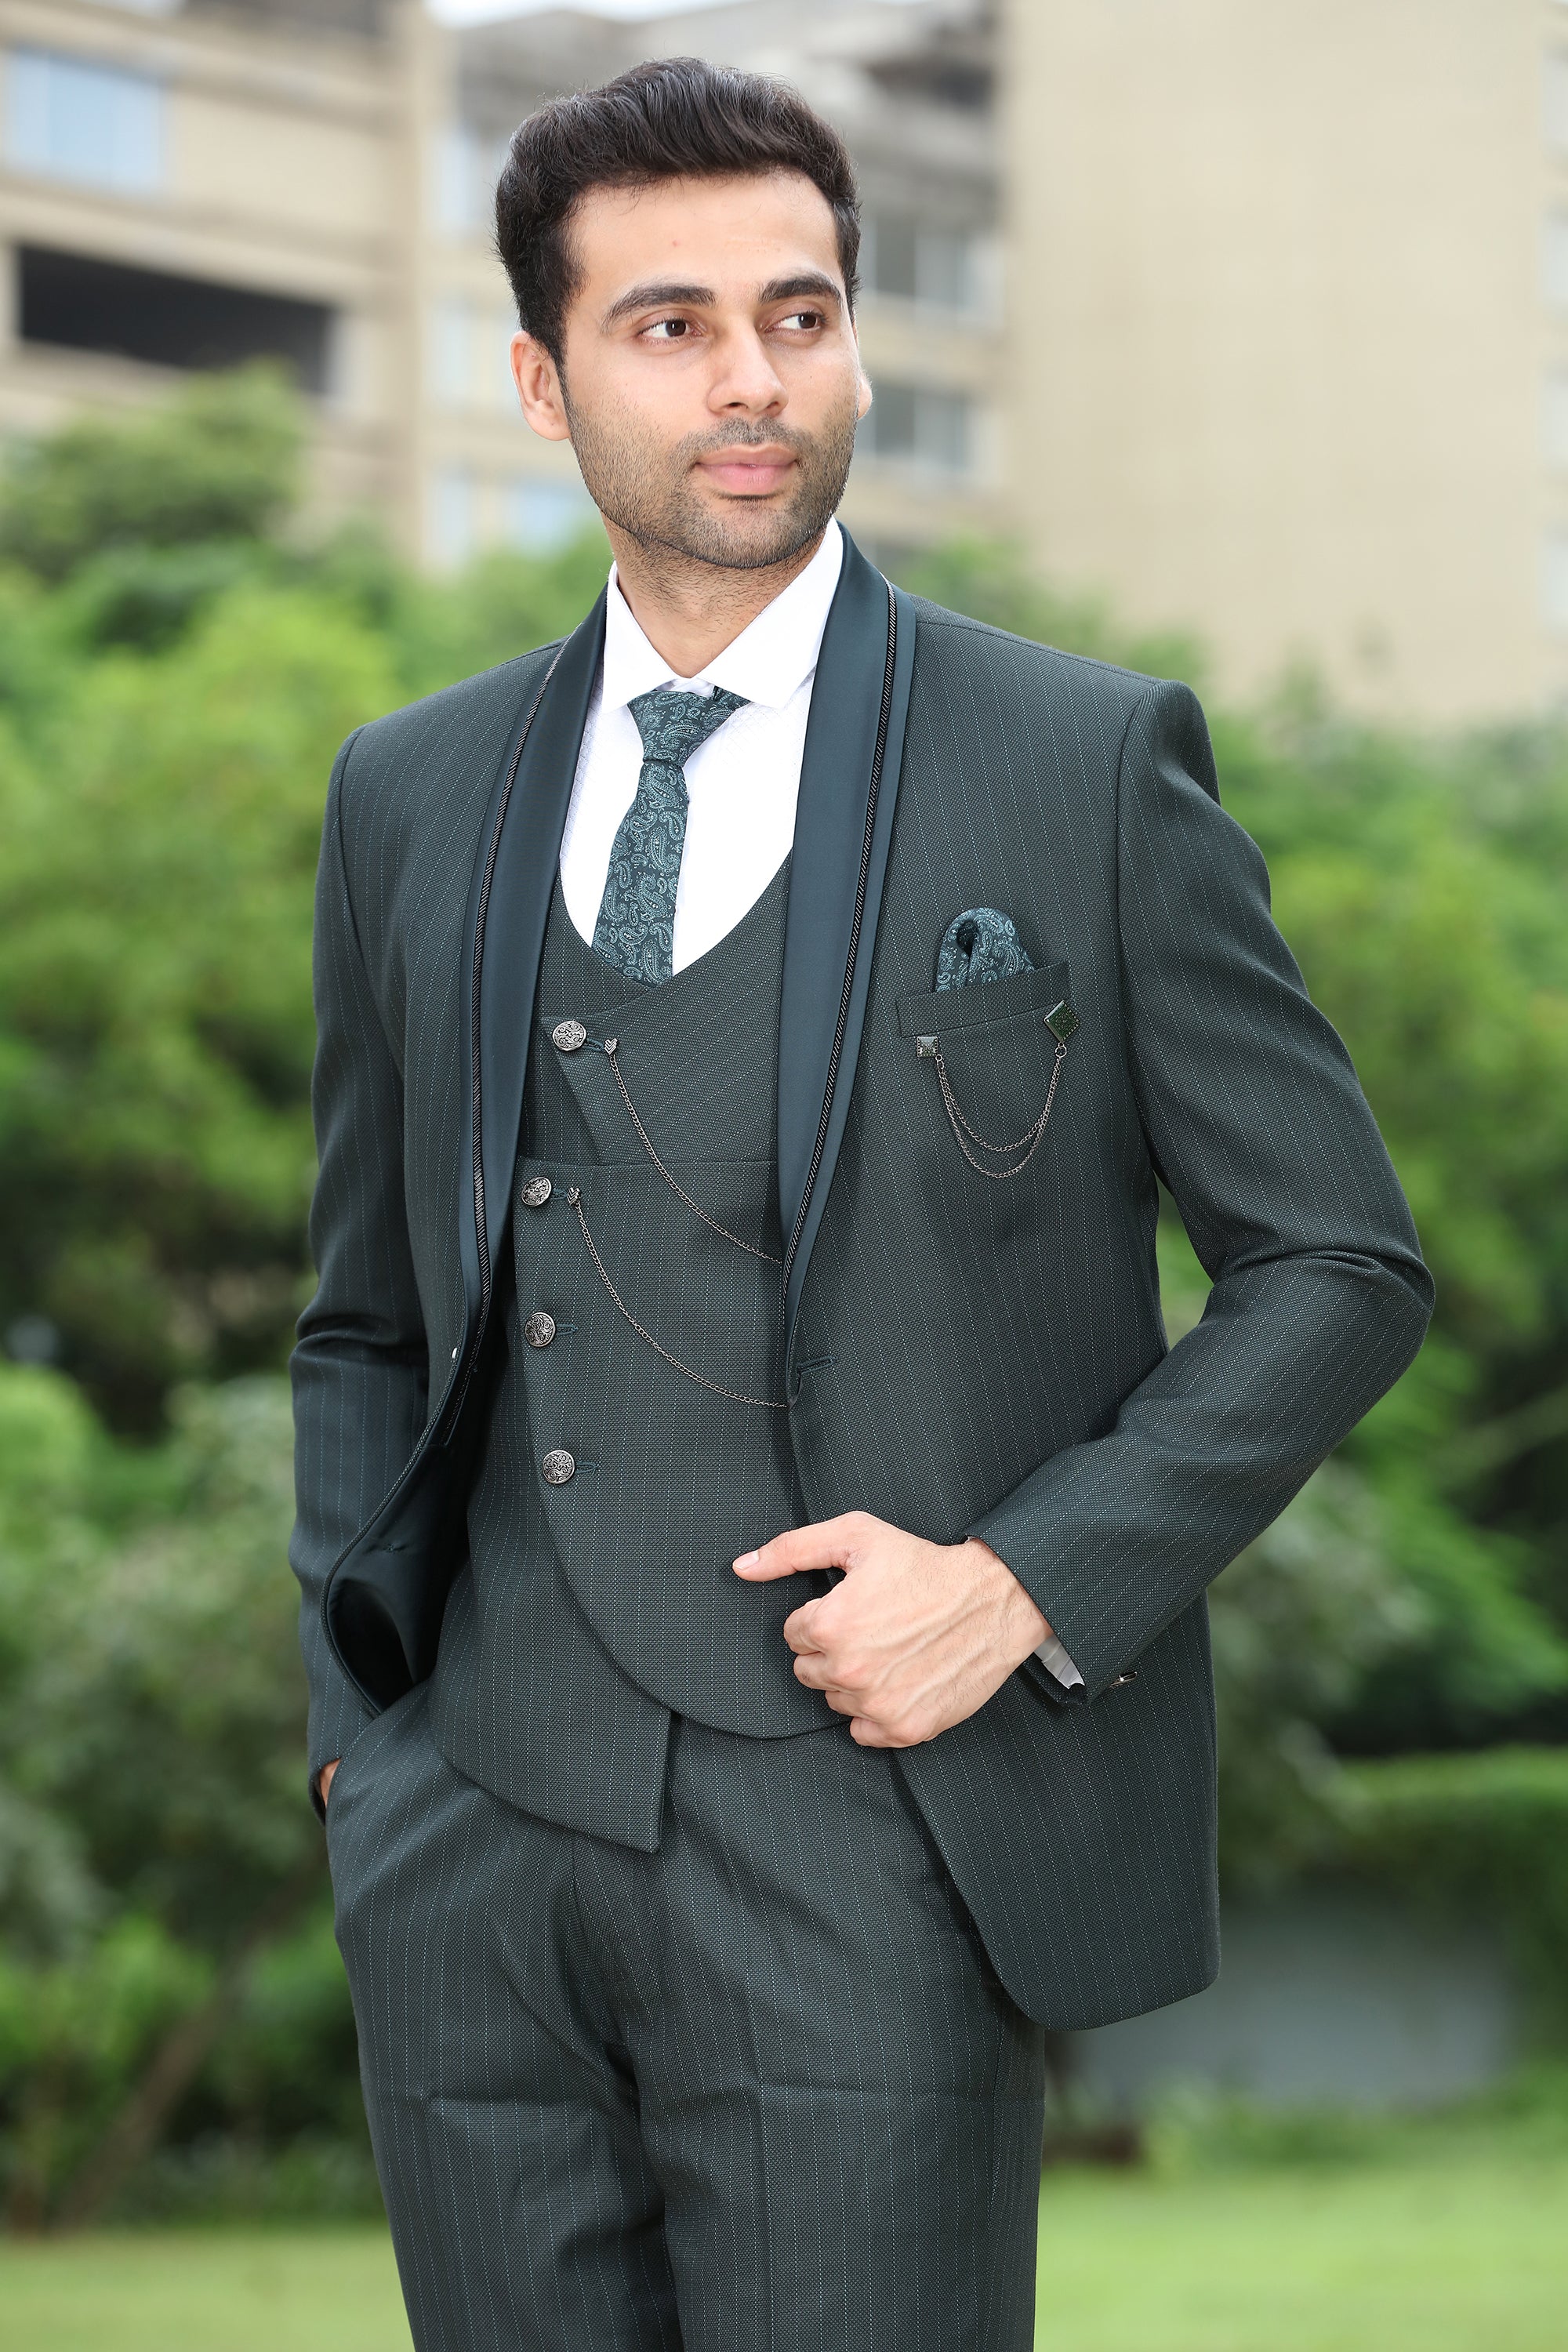 Party Plain Designer Dark Maroon Men's Suit at Rs 8500/piece in Mumbai |  ID: 15538392697